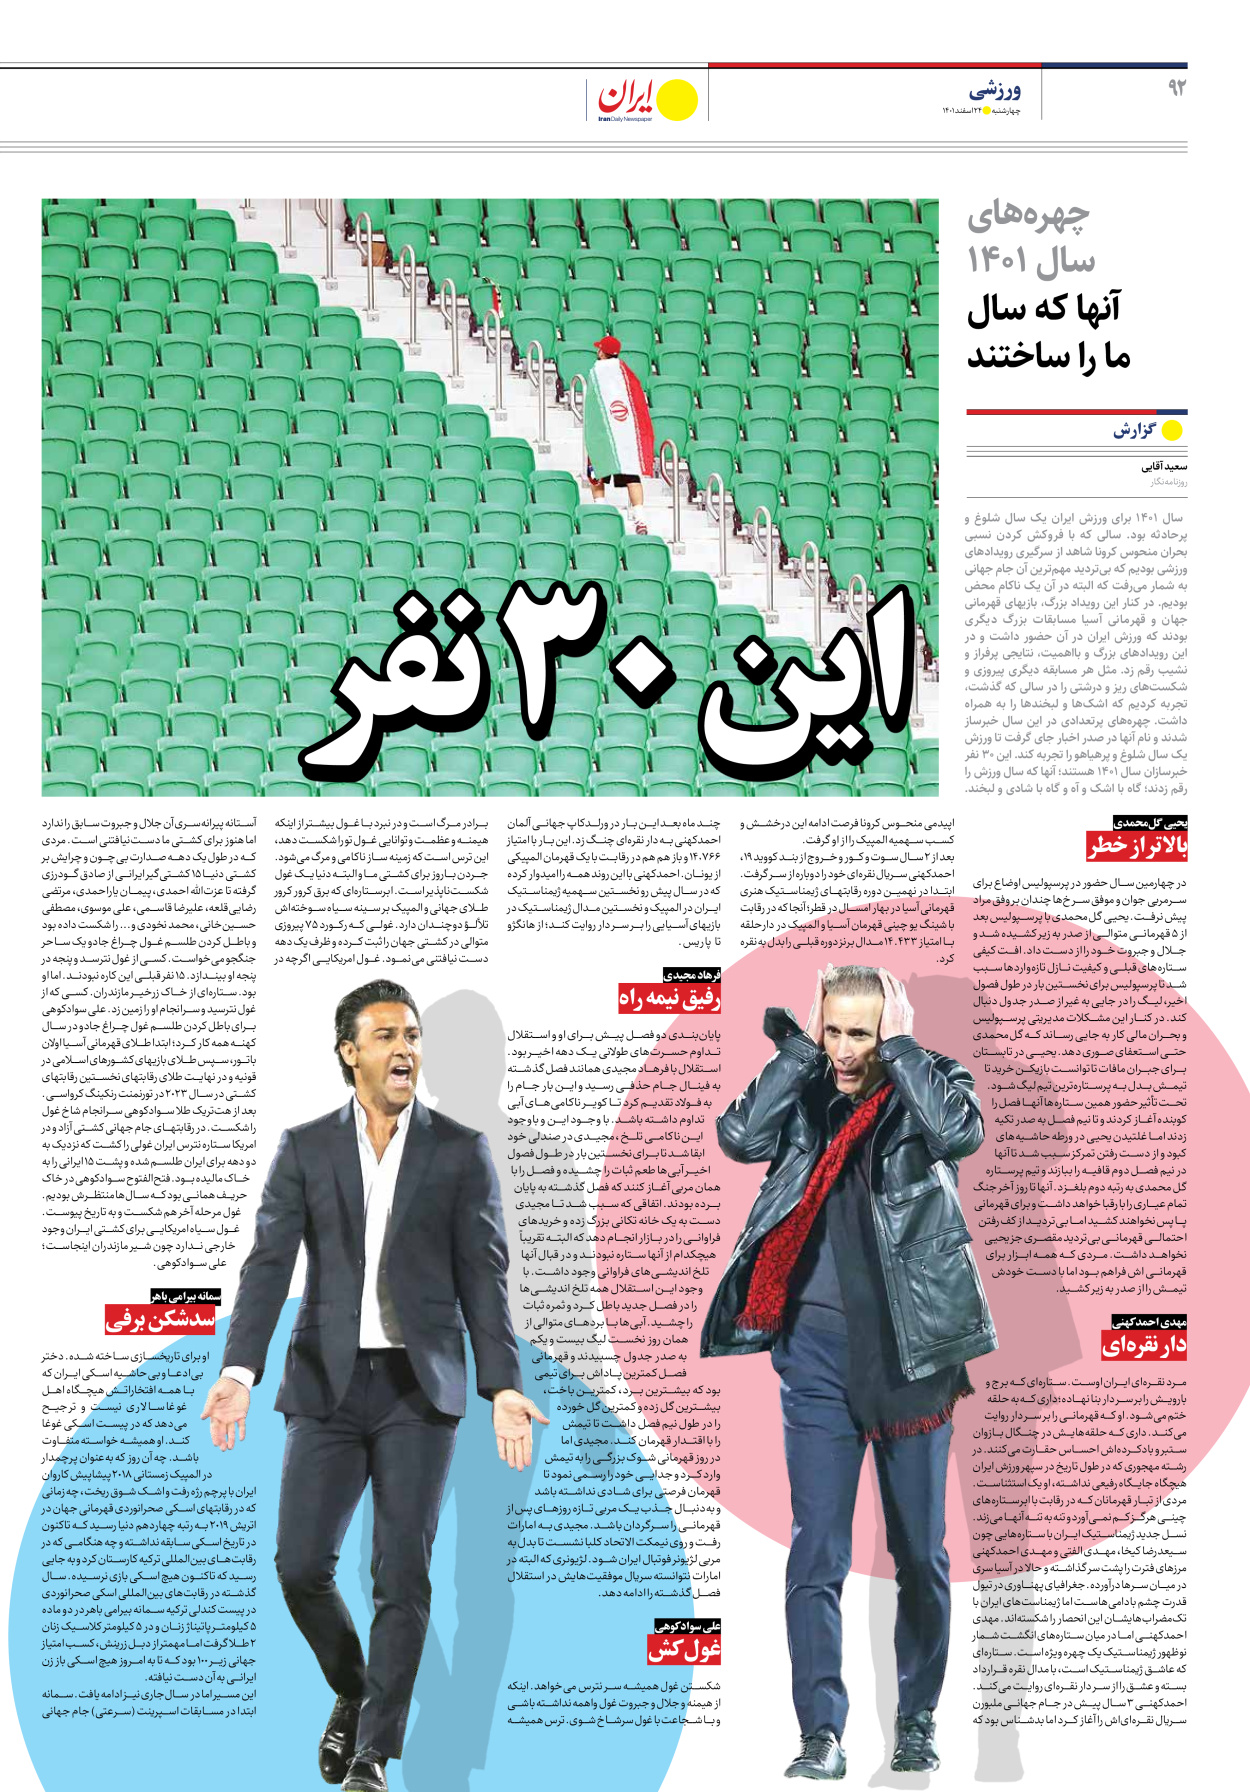 روزنامه ایران - ویژه نامه ویژه نوروز - ۲۴ اسفند ۱۴۰۱ - صفحه ۹۲